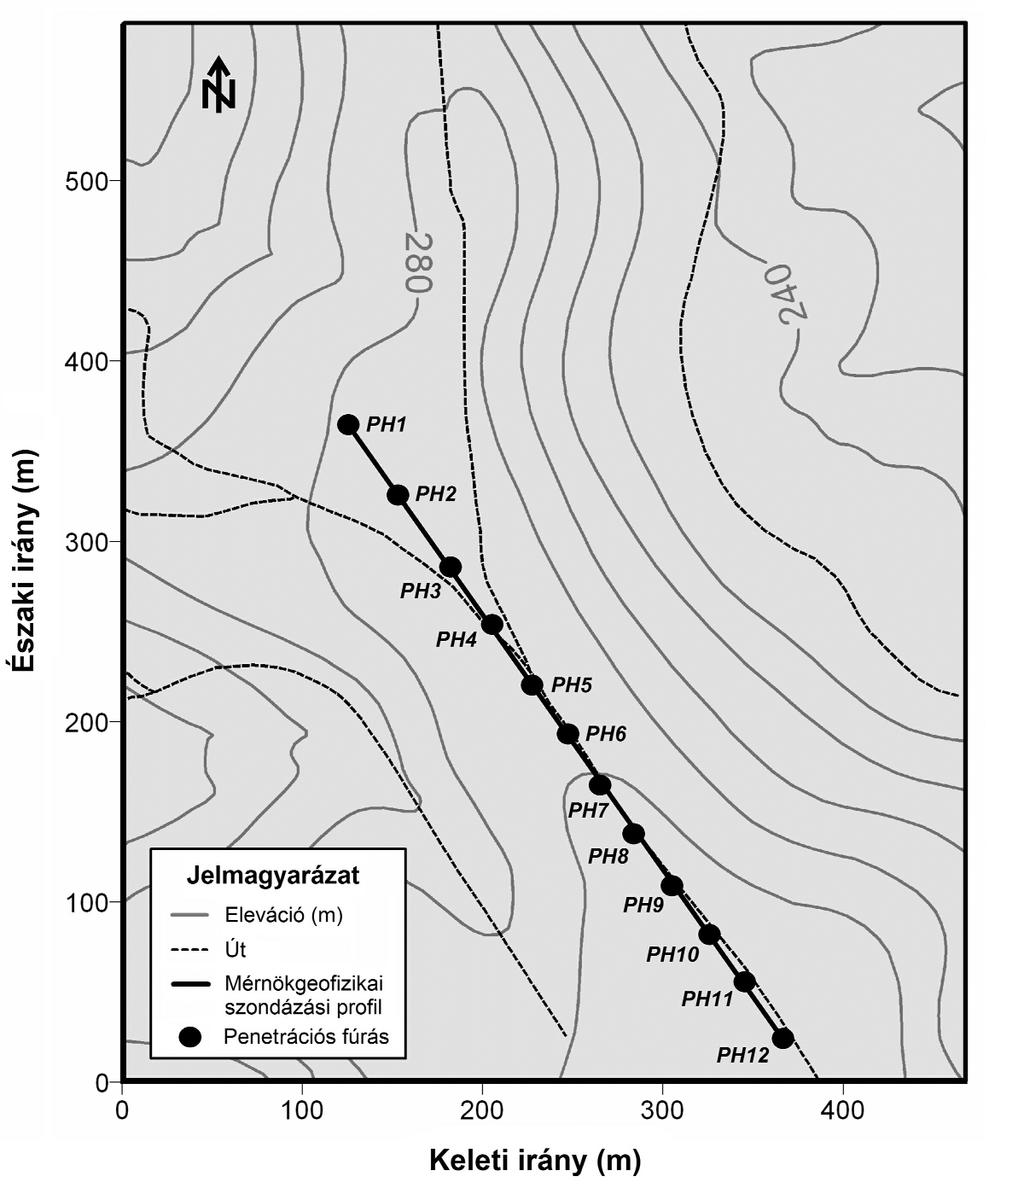 pedett. MGSZ mérés a talajvízszint feletti régióban 0-27 m-ig történt. A terület kõzetfizikai paramétereit elõzetesen Drahos [2] inverziós módszerrel határozta meg.